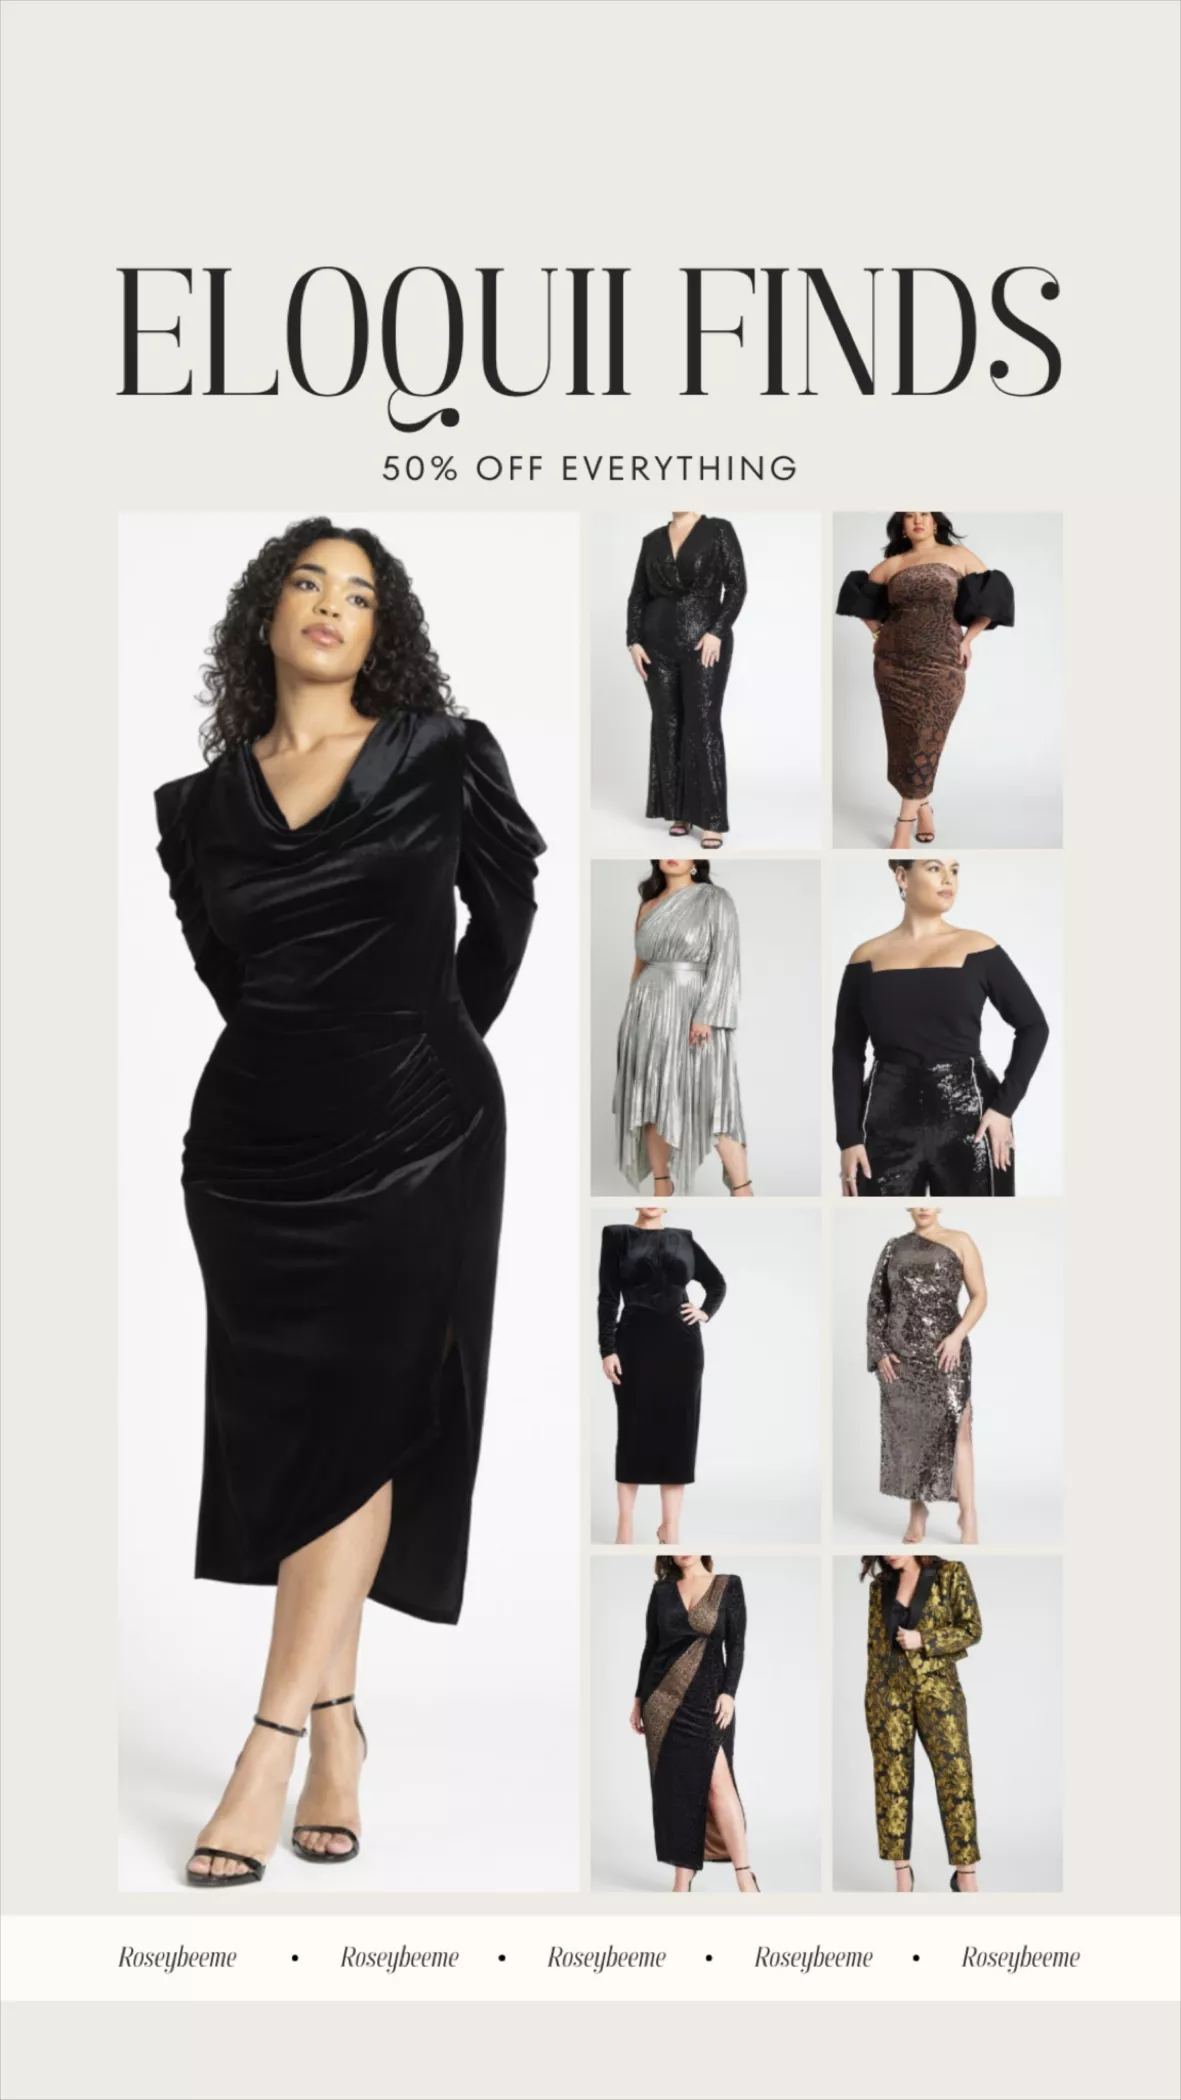 Draped Velvet Column Dress curated on LTK